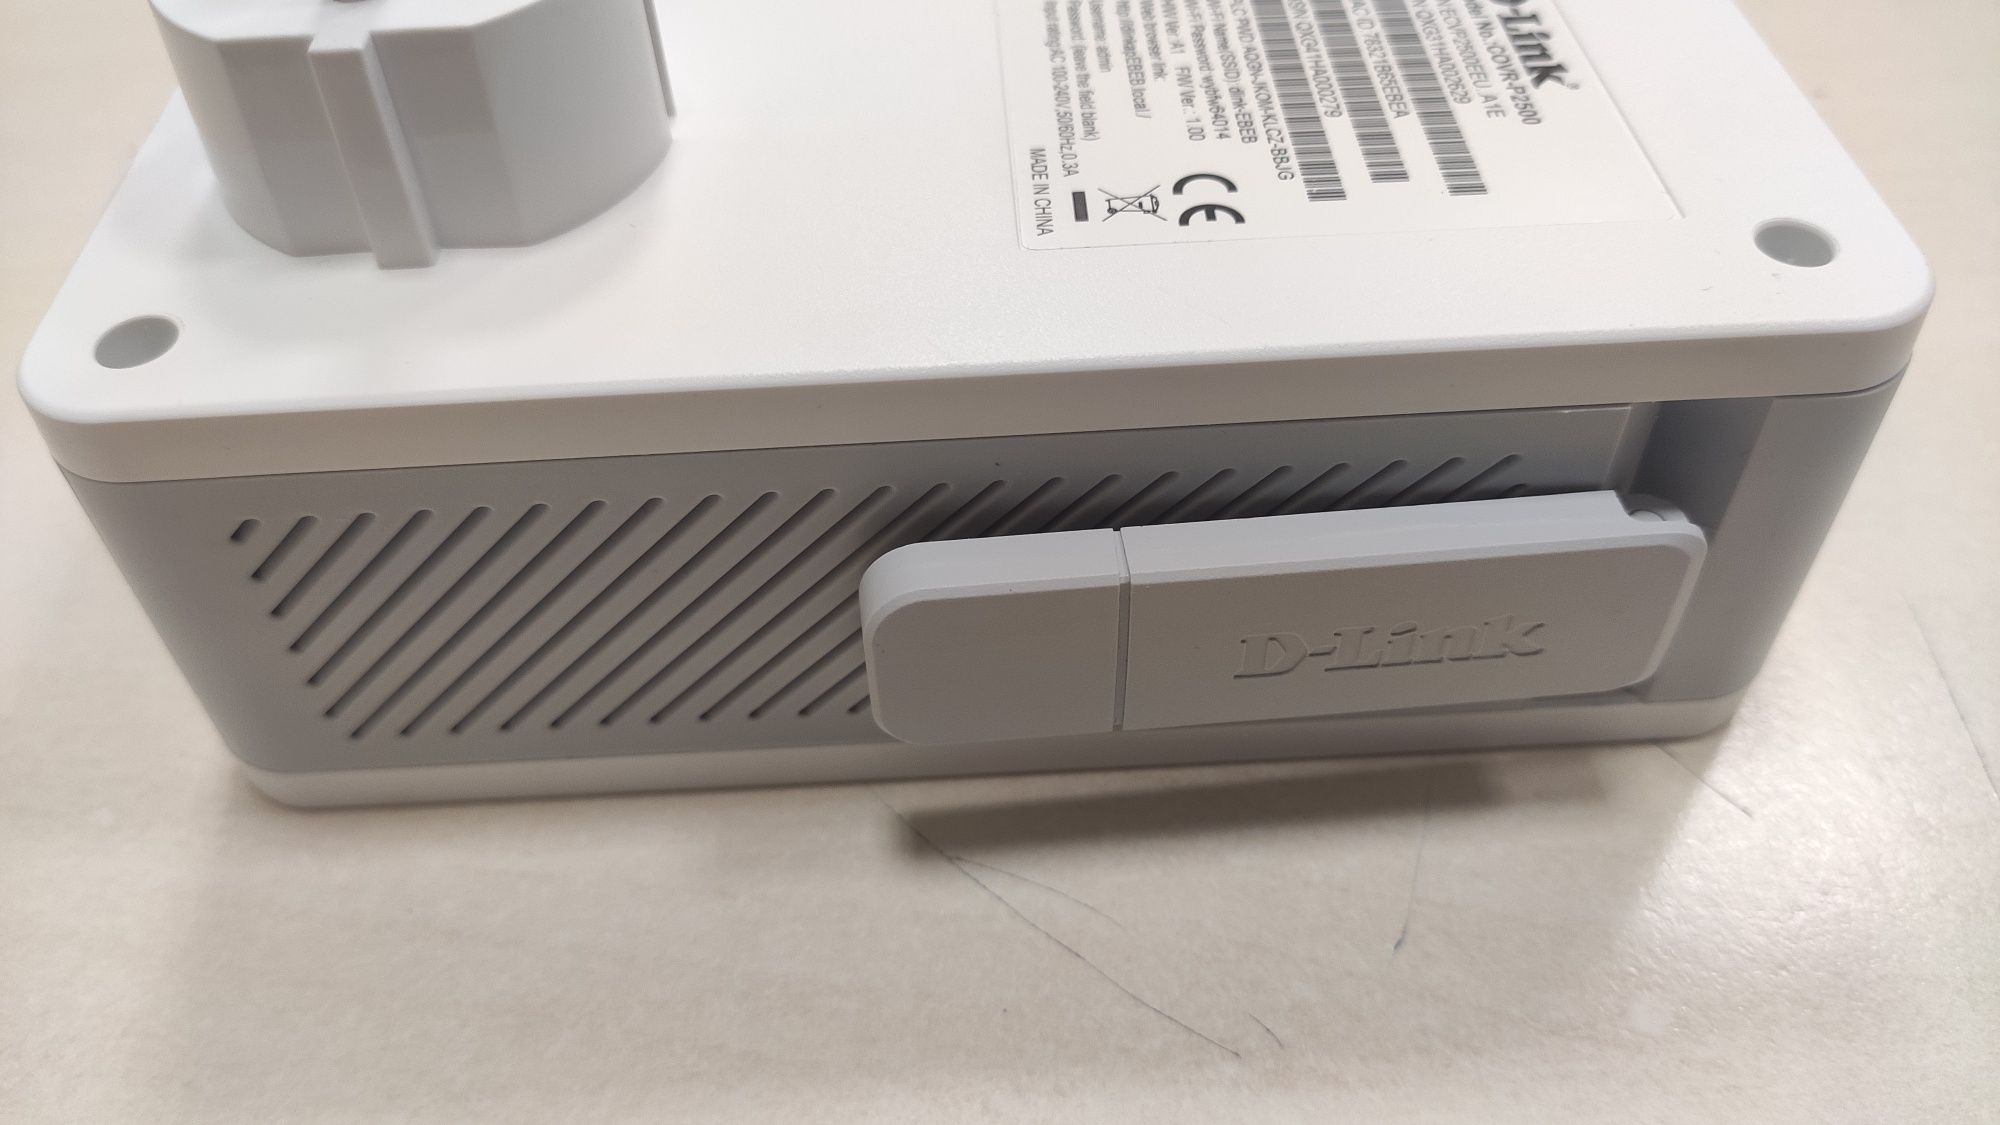 Powerline Wi-Fi
COVR-P2502 - czyli Internet z gniazdka elektrycznego